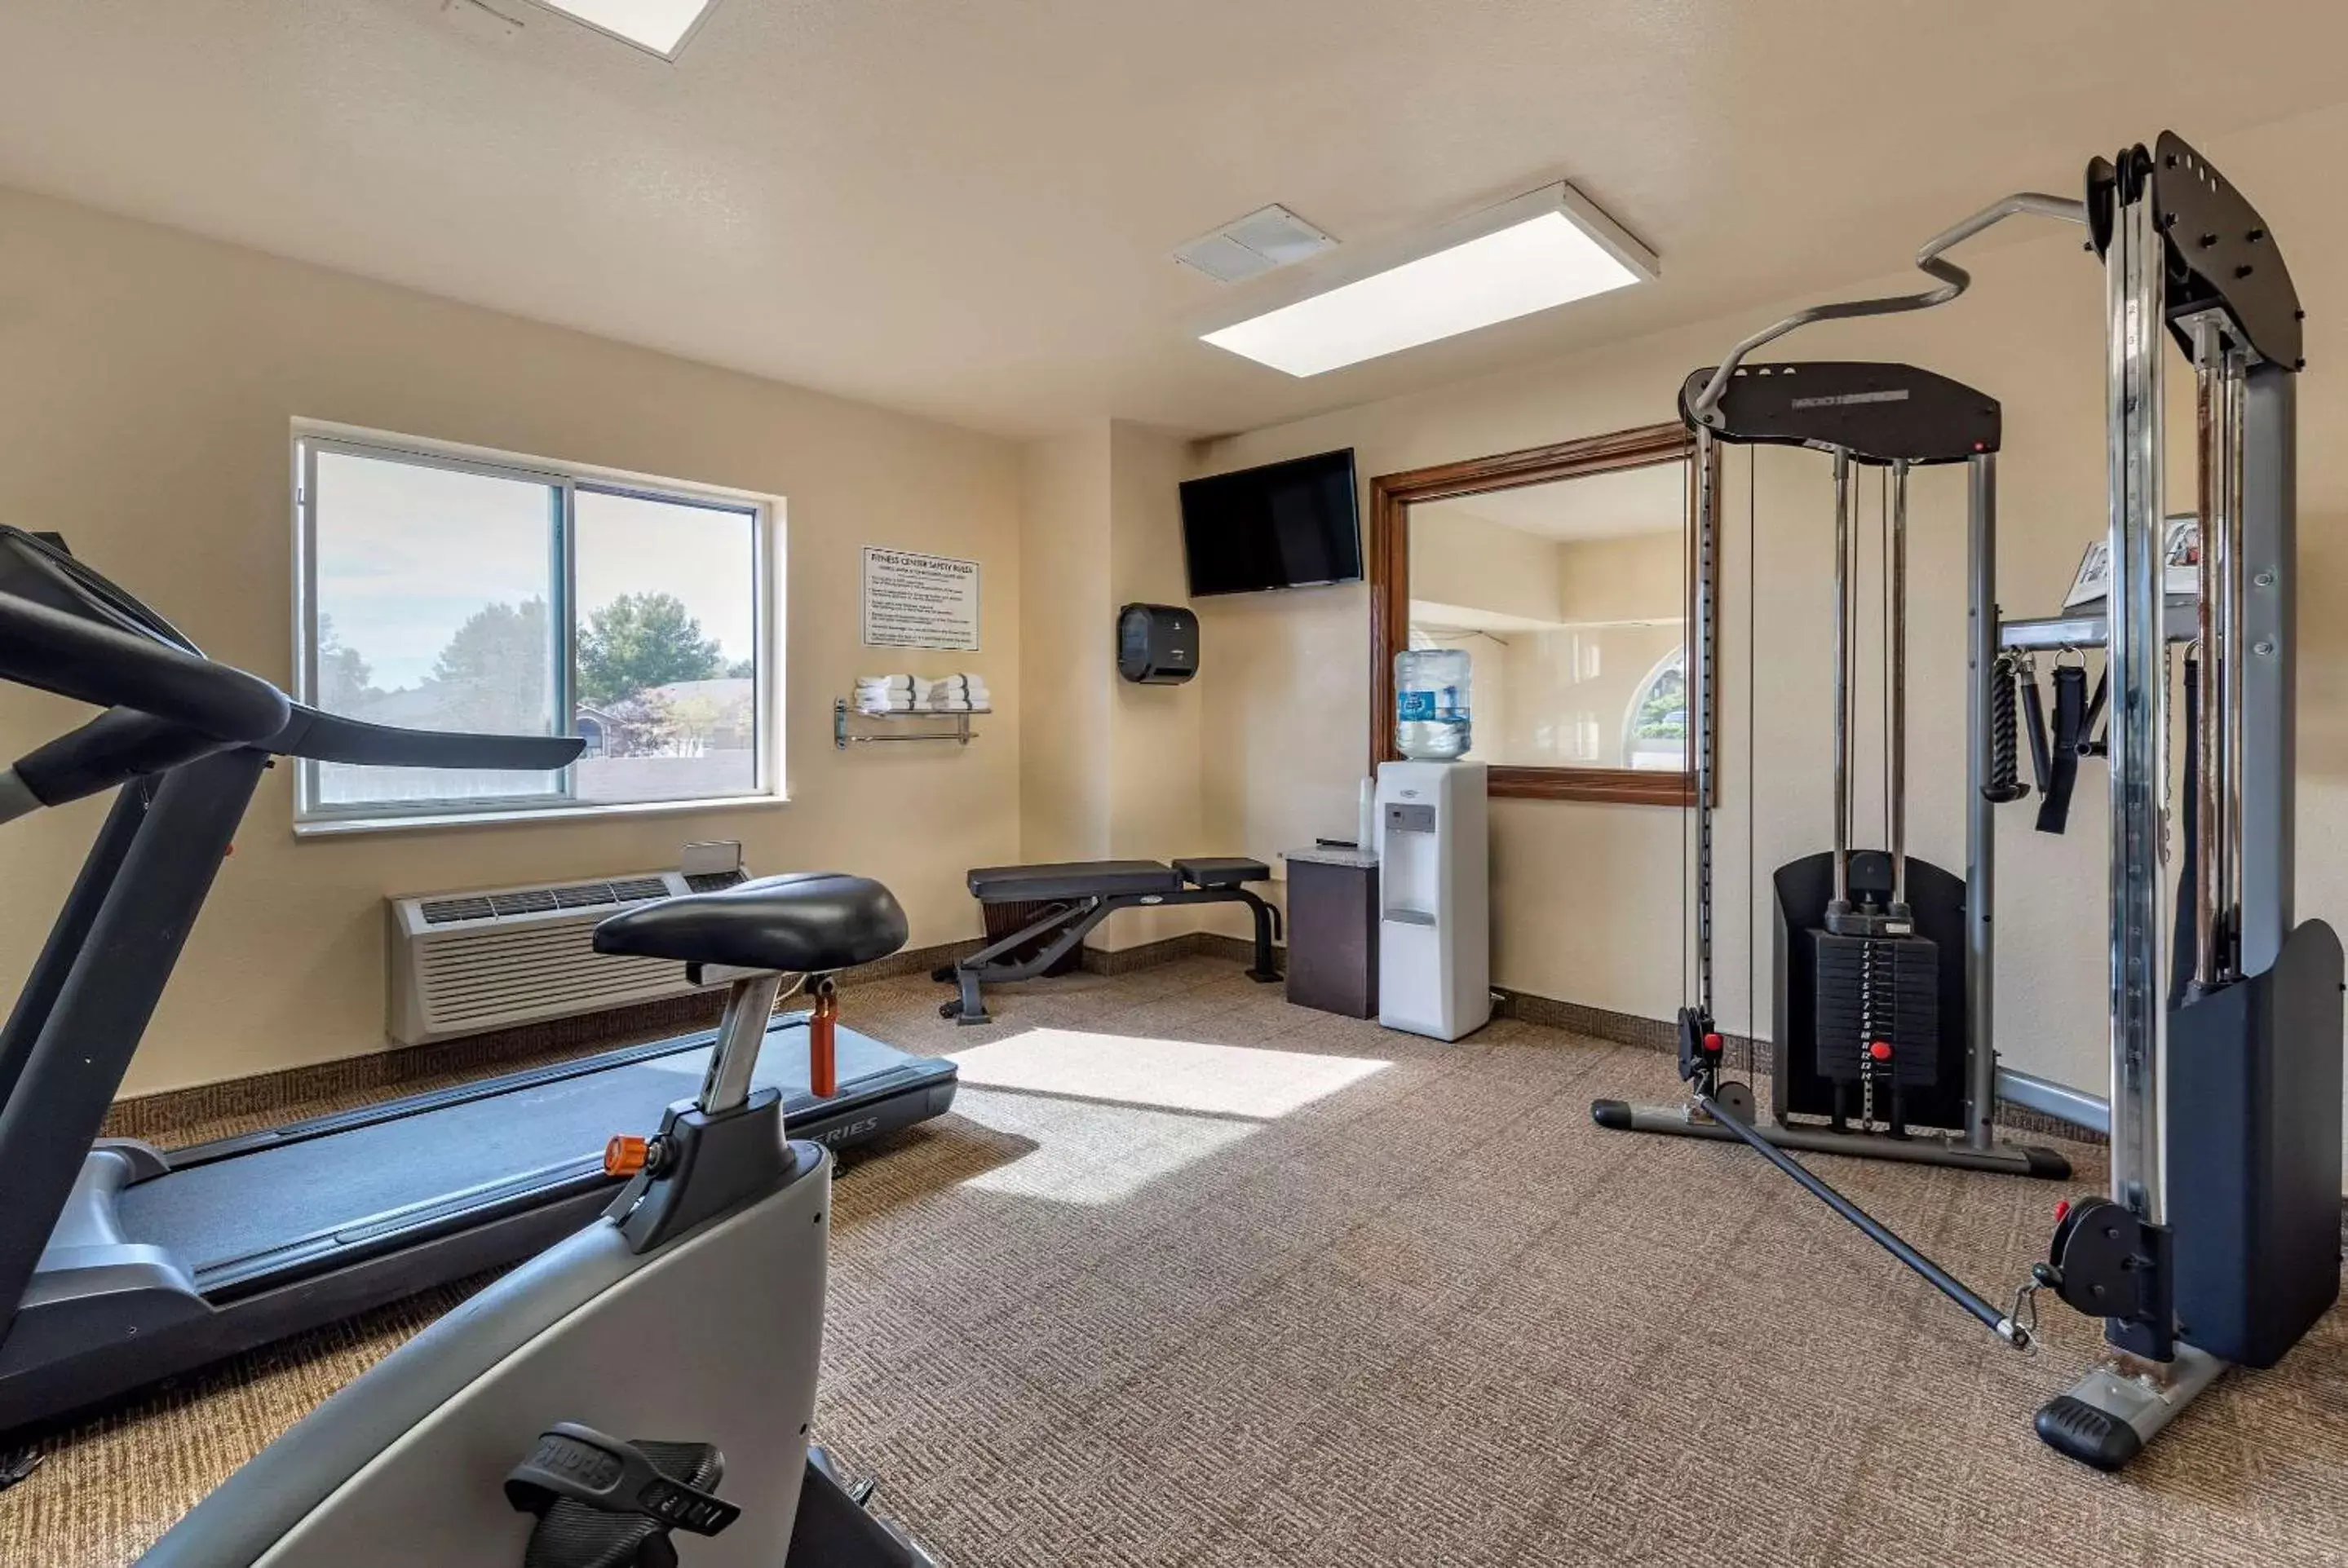 Fitness centre/facilities, Fitness Center/Facilities in Comfort Inn & Suites Pueblo